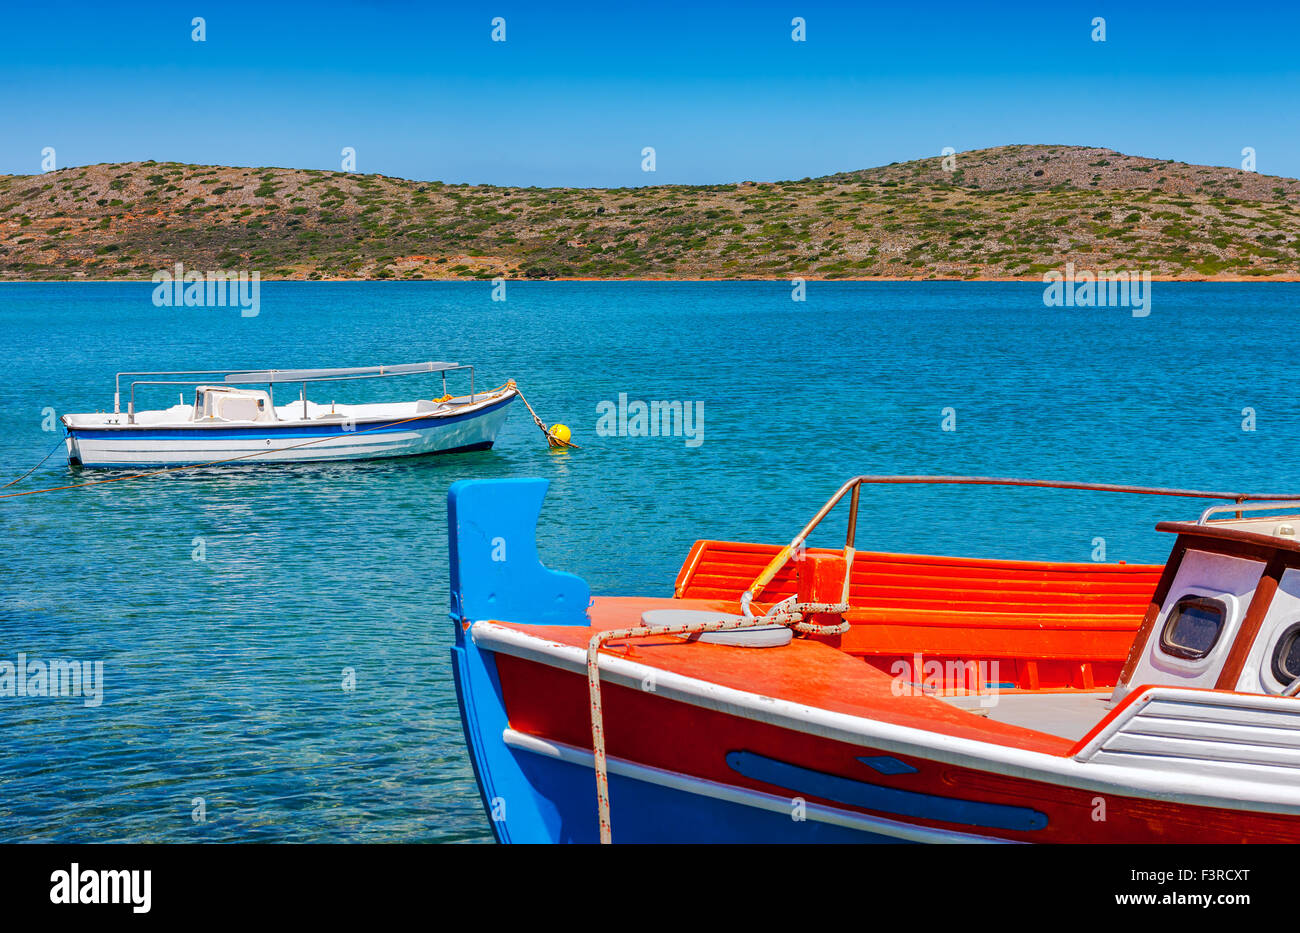 Bateaux de pêche au large de la côte de la baie de Mirabello, Crète, Grèce Banque D'Images